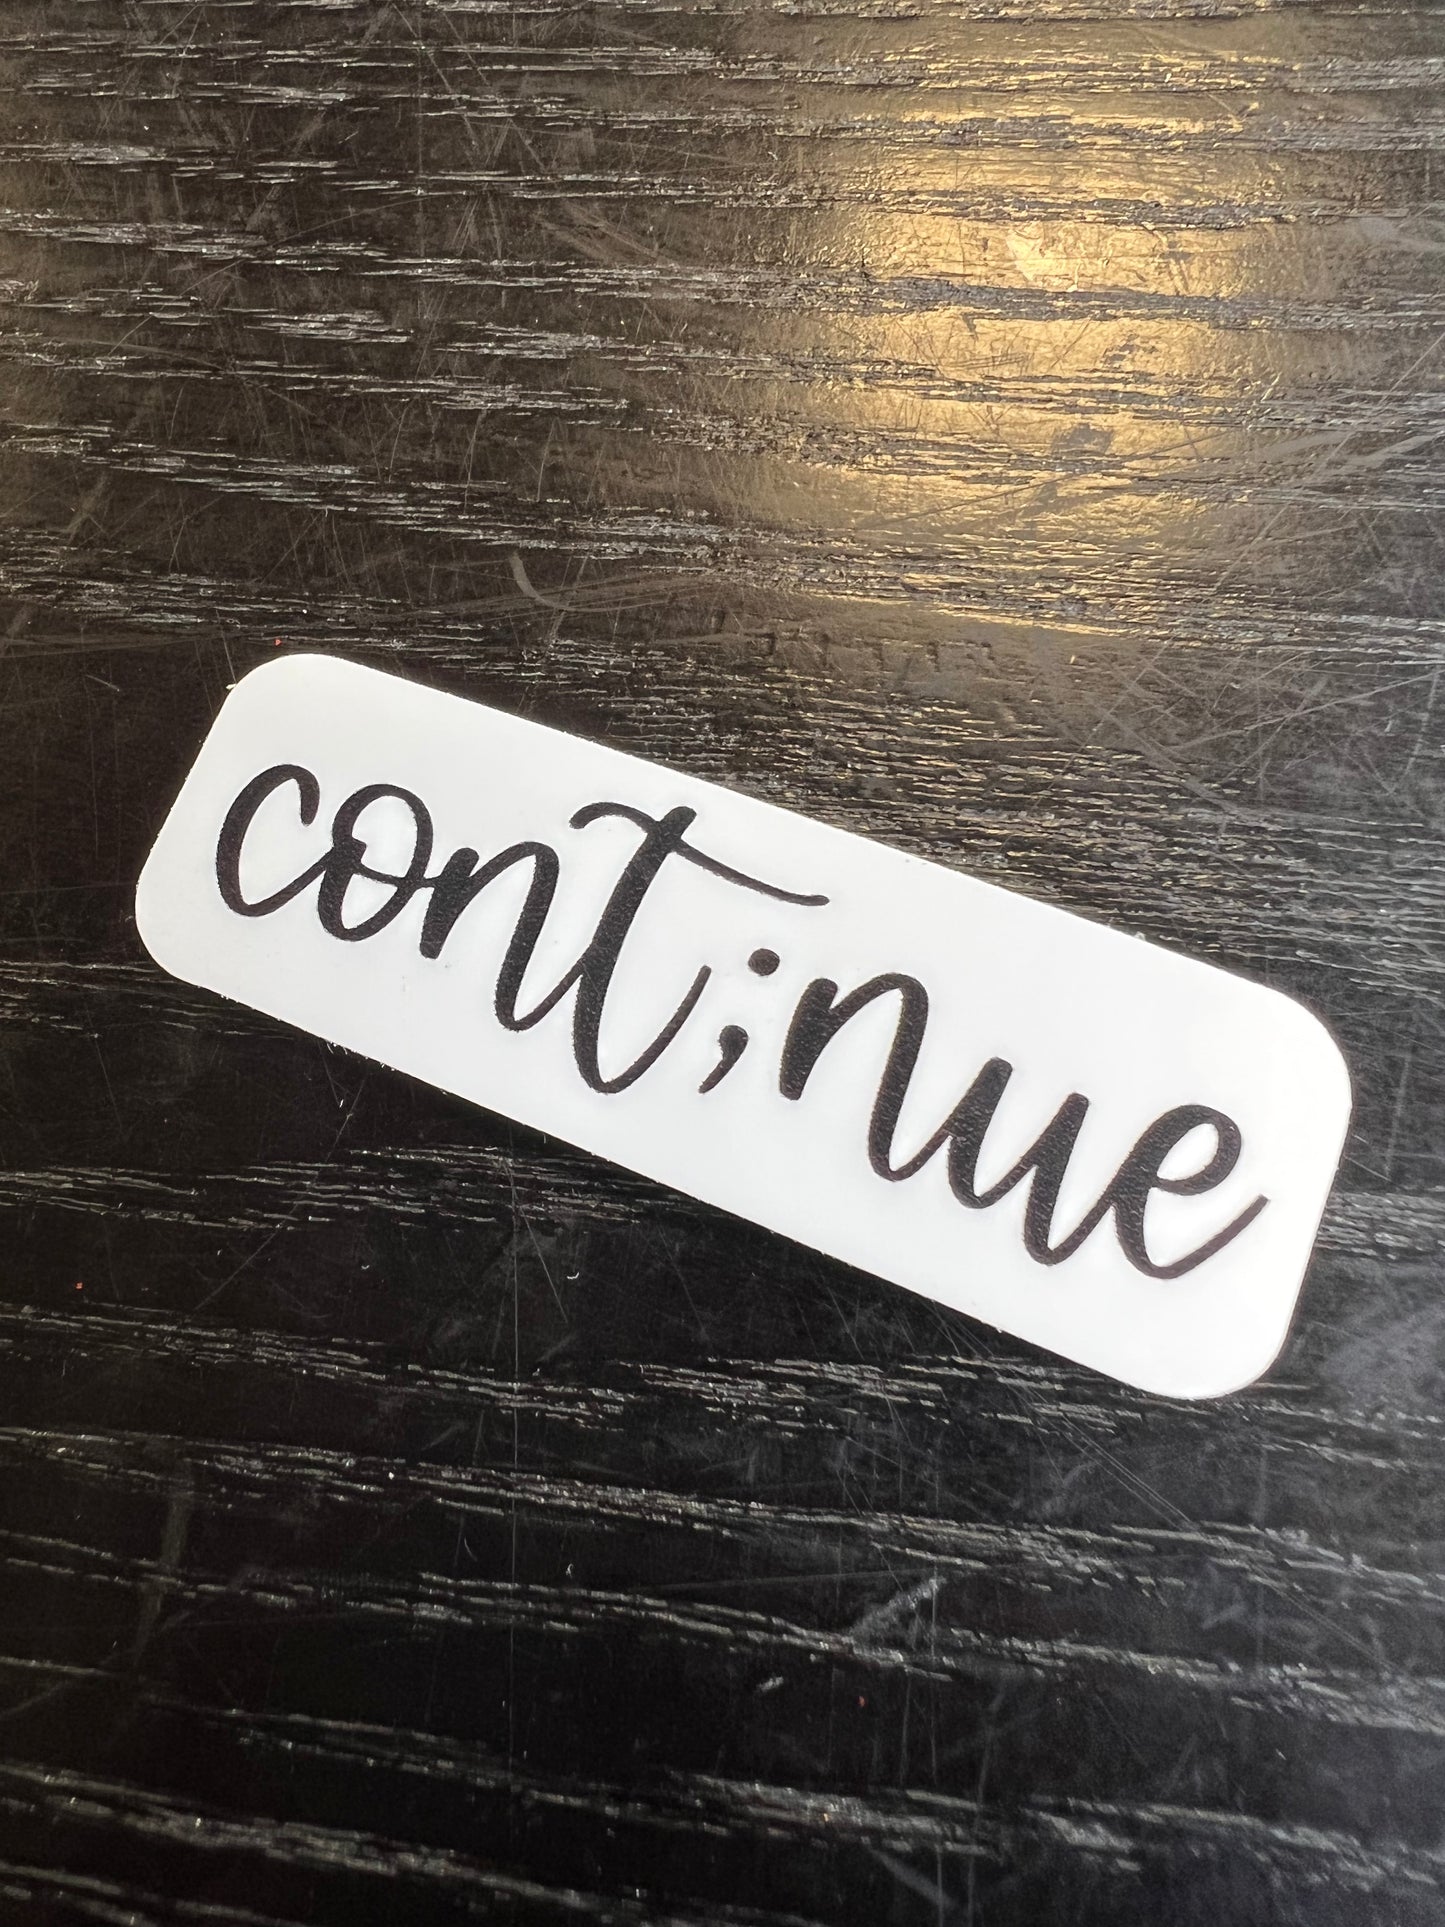 Cont;nue (continue) mental health sticker